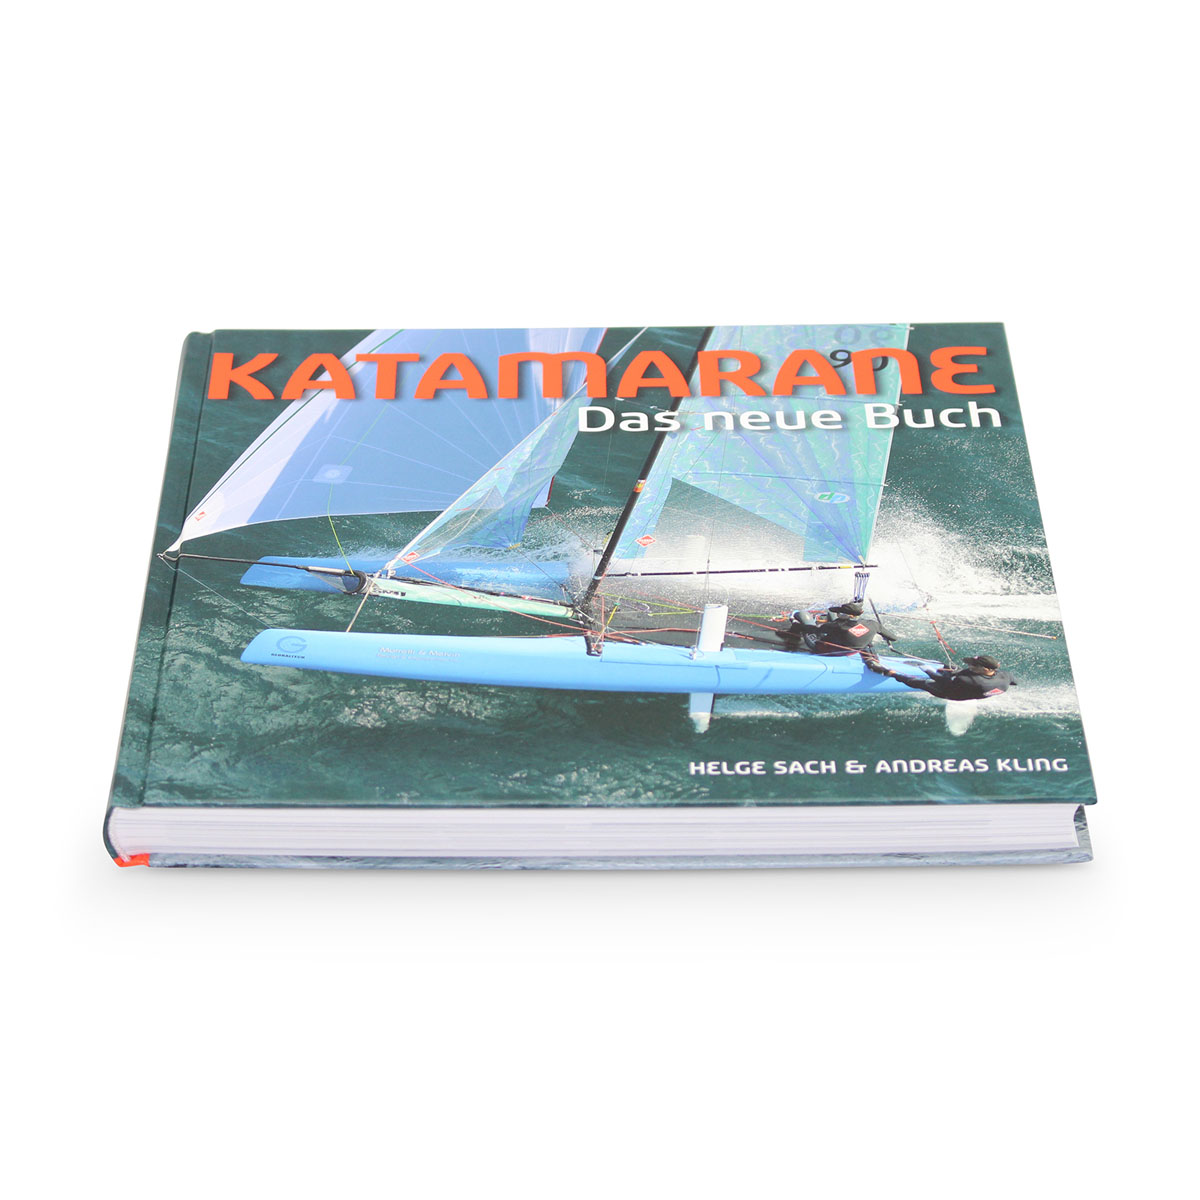 Buch "Katamarane Das neue Buch" Sach,Kling 2013 (TC1563)